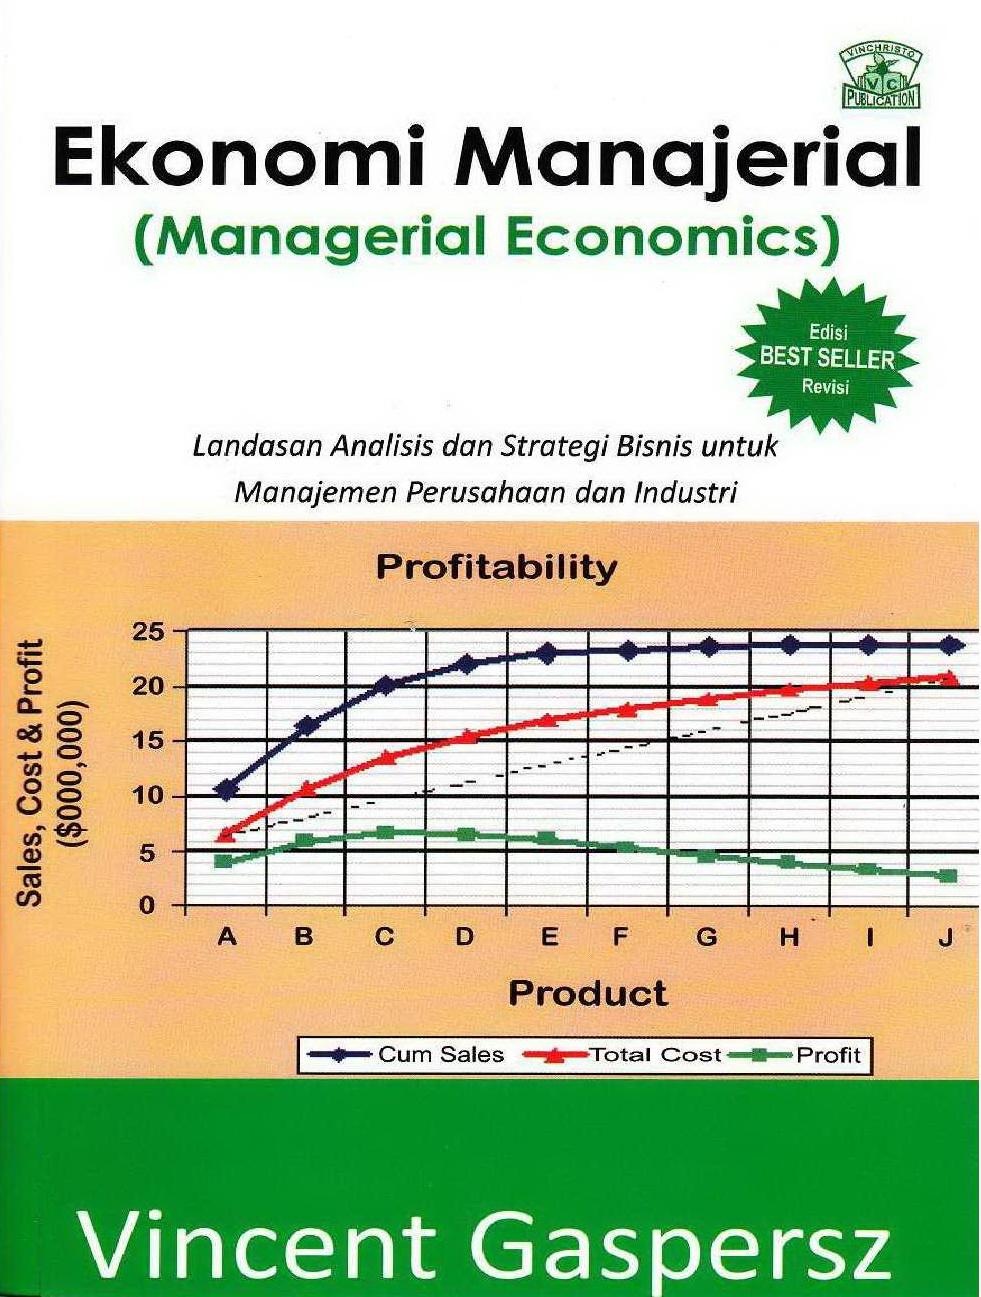 2011 Ekonomi Manajerial Managerial Economics Landasan Analisis dan Strategi Bisnis untuk Manajemen Perusahaan dan Industri VG